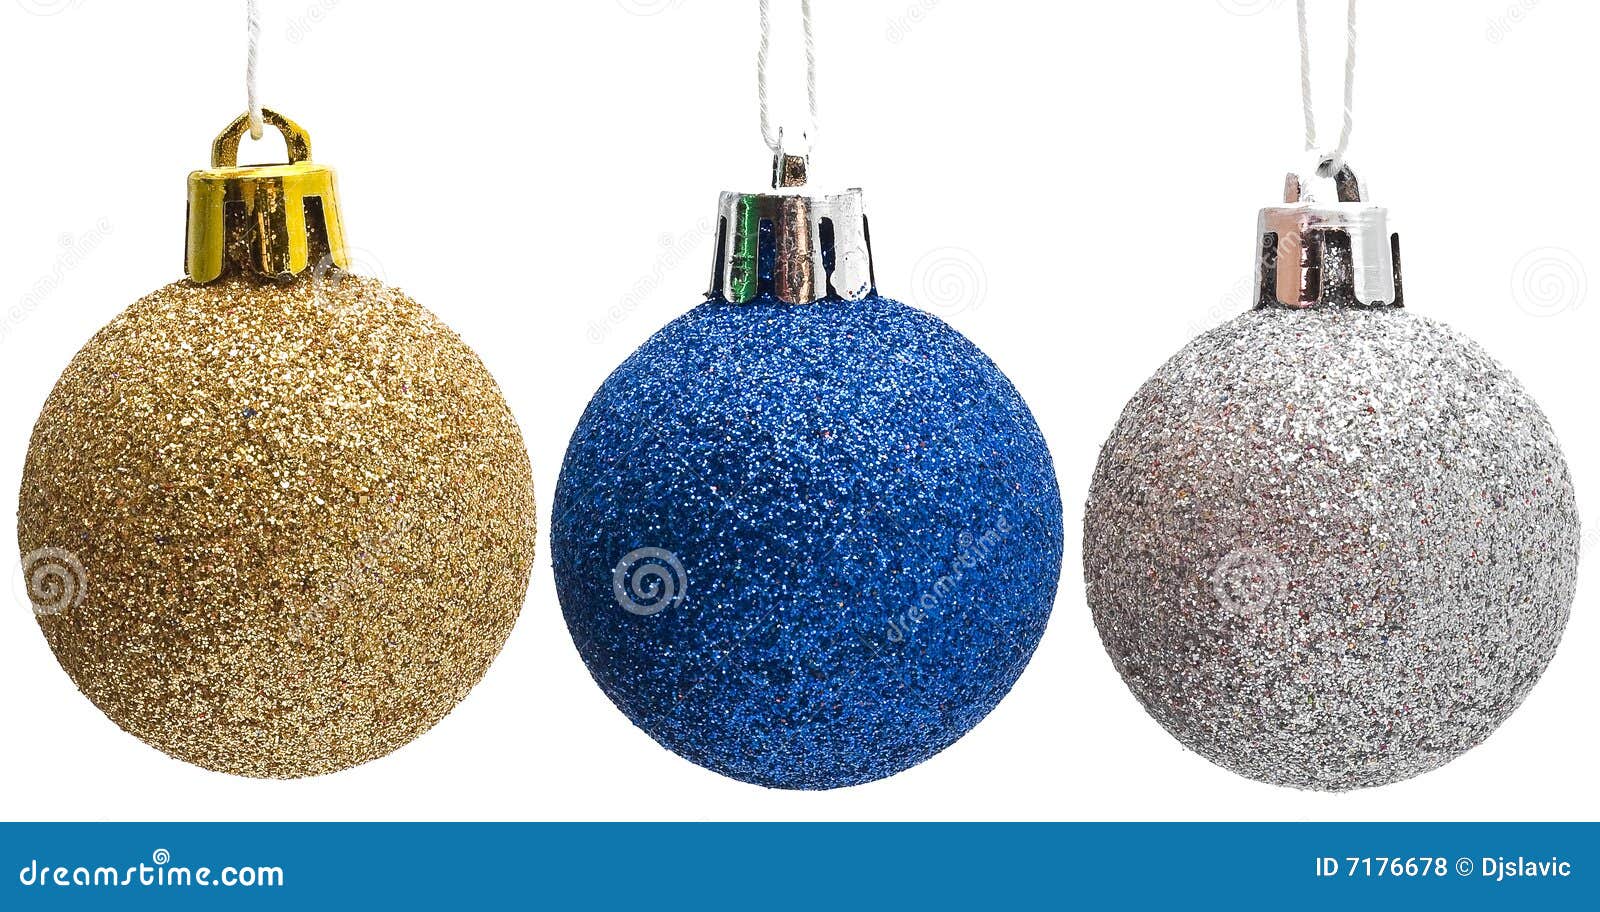 Christmas Decoration, Set of Three Shiny Balls Stock Photo - Image of ...